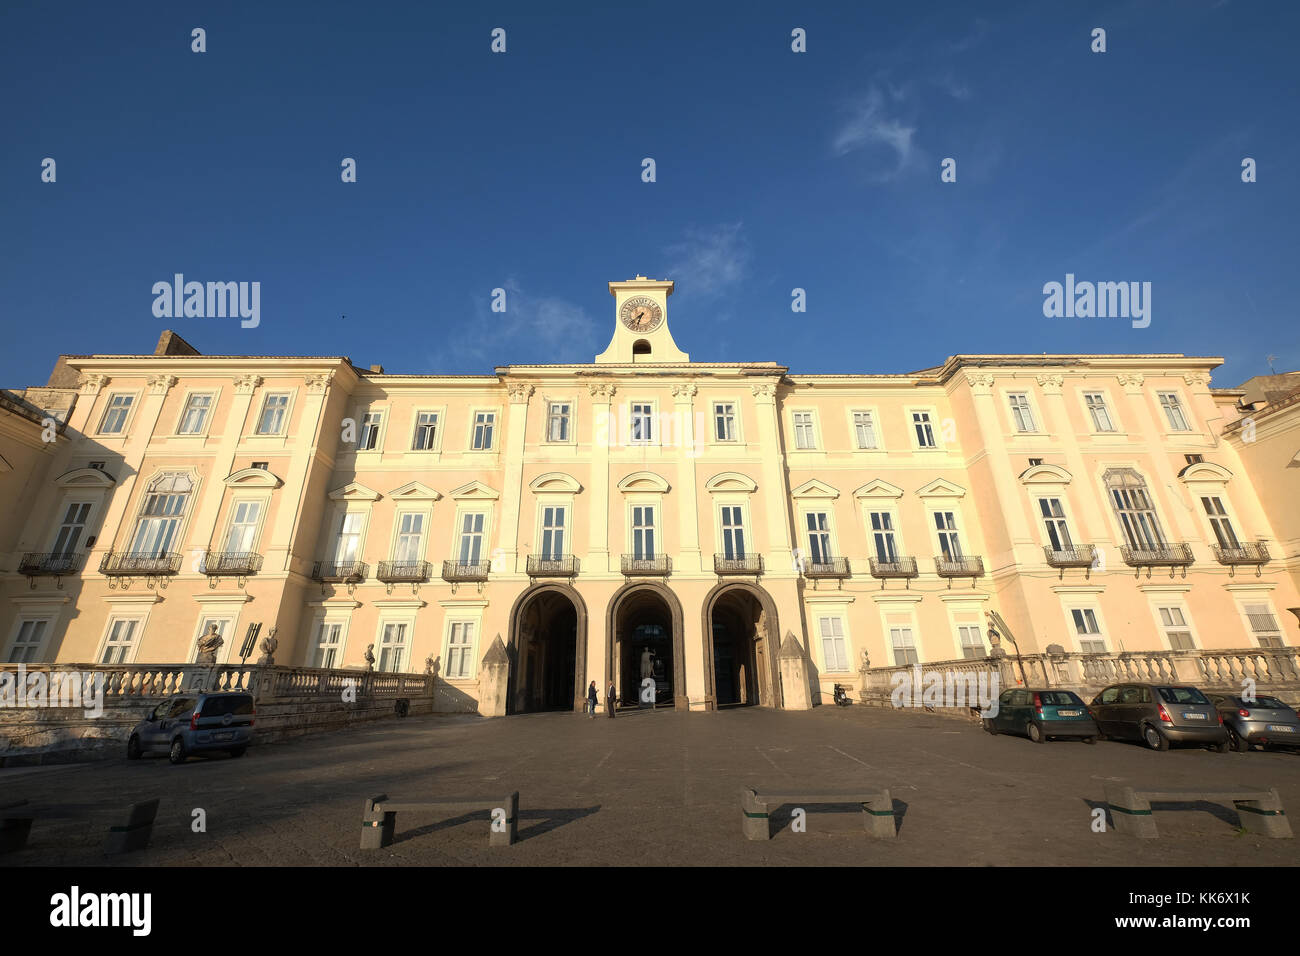 The Royal Palace of Portici (Reggia di Portici or Palazzo Reale di Portici)Portici, Naples Italy Stock Photo